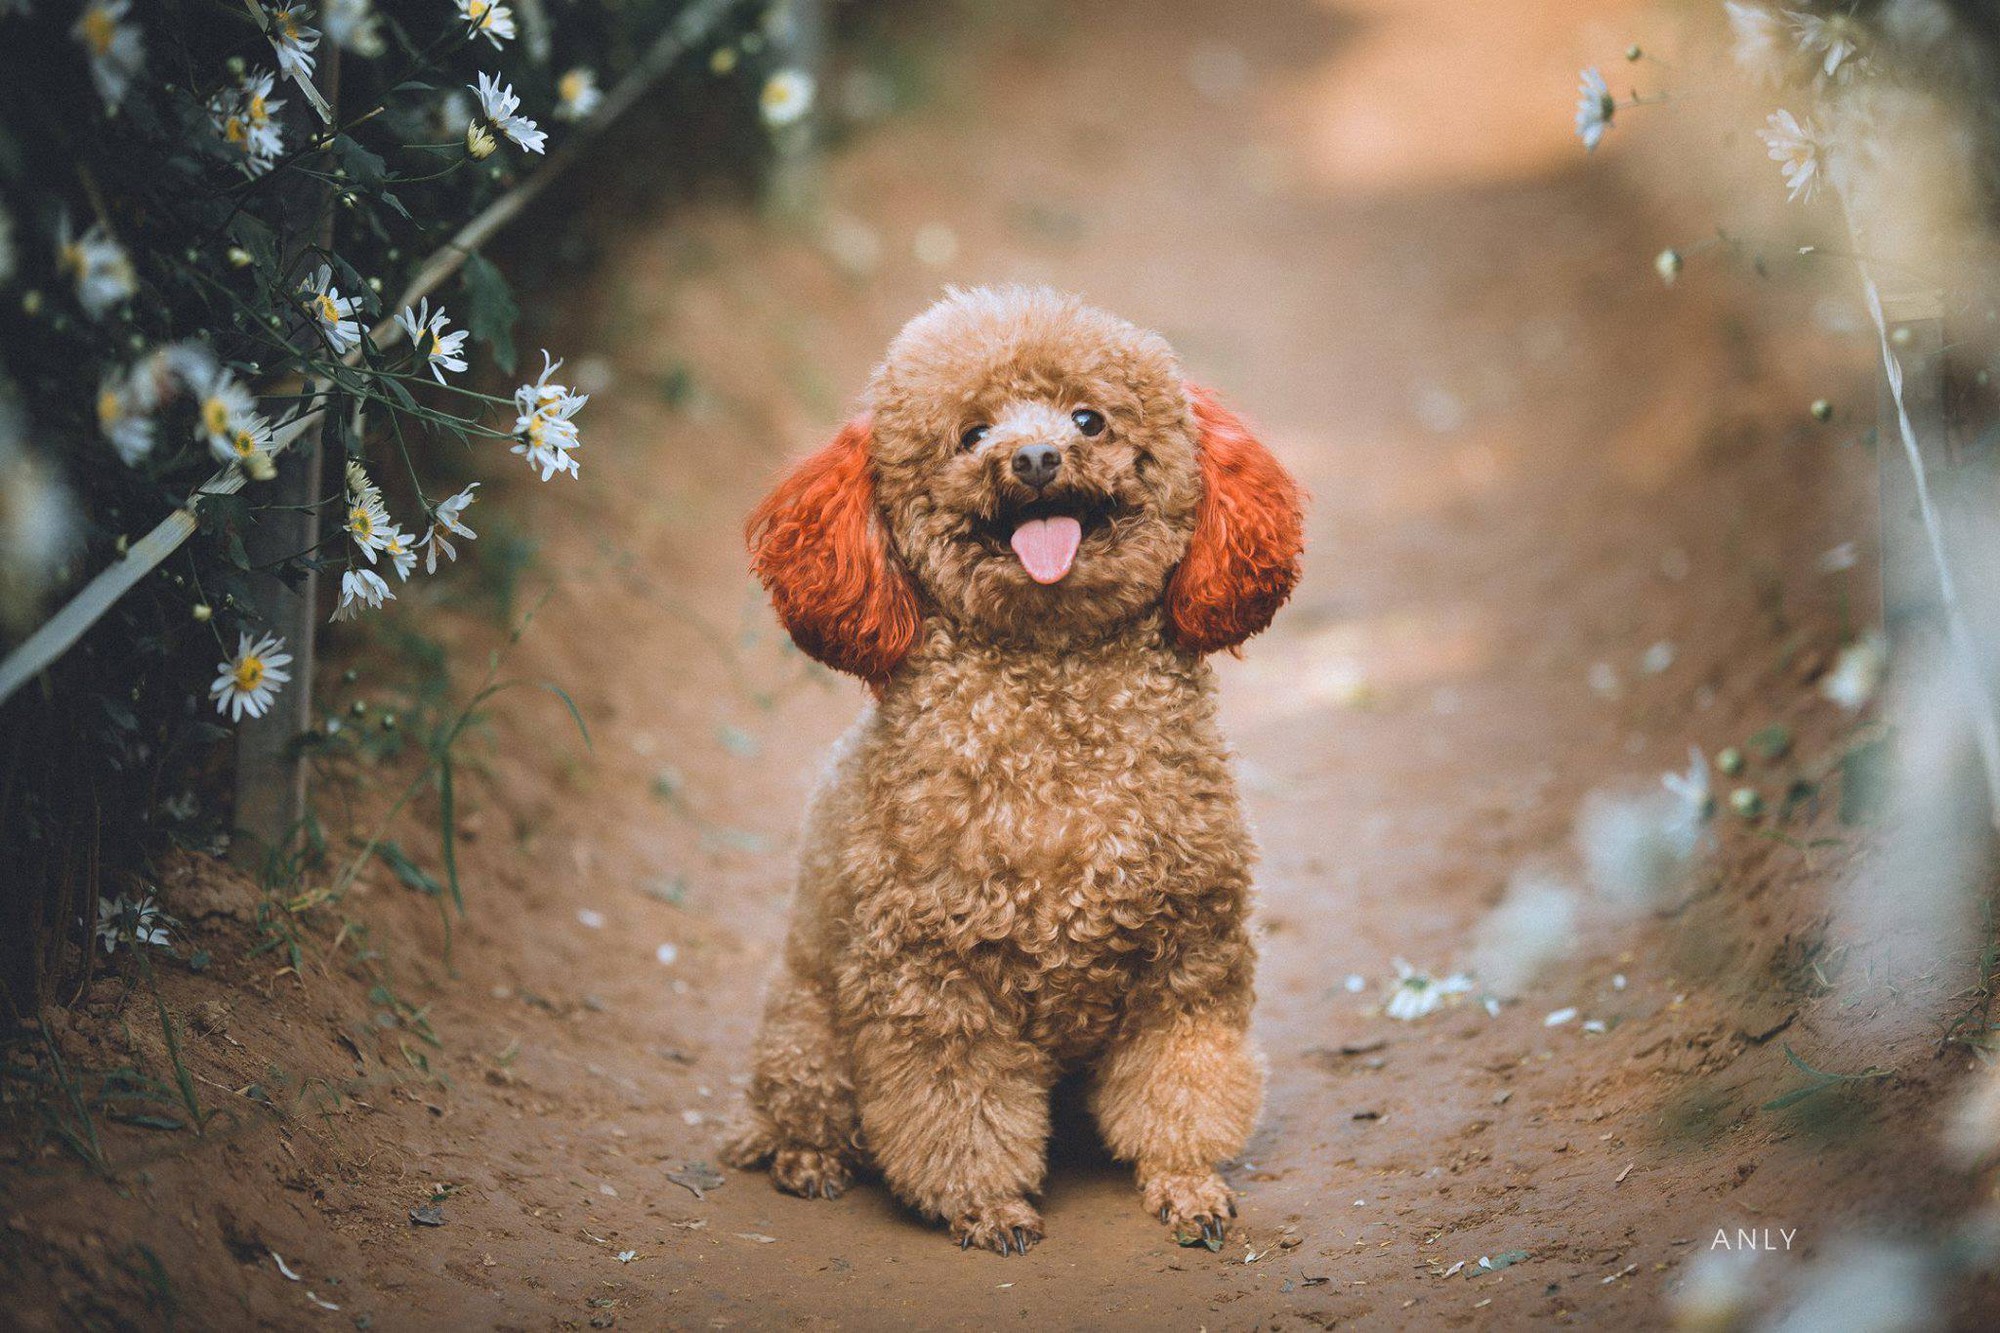 Hãy cùng chiêm ngưỡng những hình ảnh ngộ nghĩnh của thú cưng hình chó Poodle cute. Những bức ảnh đáng yêu này sẽ giúp bạn thấy được sự tình cảm và thông minh của loài chó này.